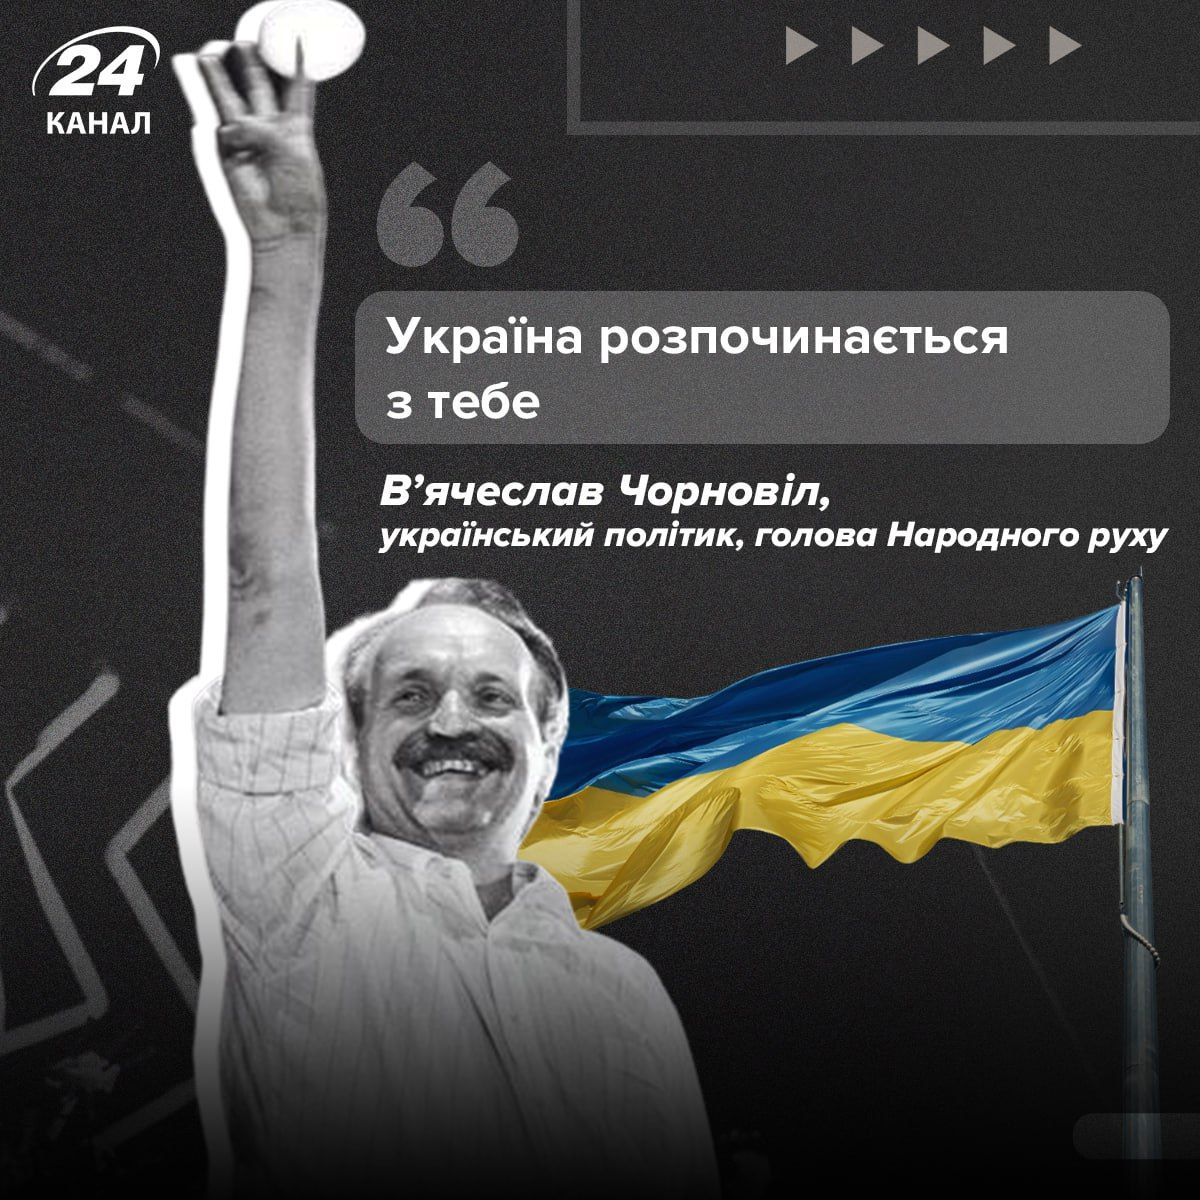 В'ячеслав Чорновіл - чи знають українці, хто він такий - біографія, цікаві факти 